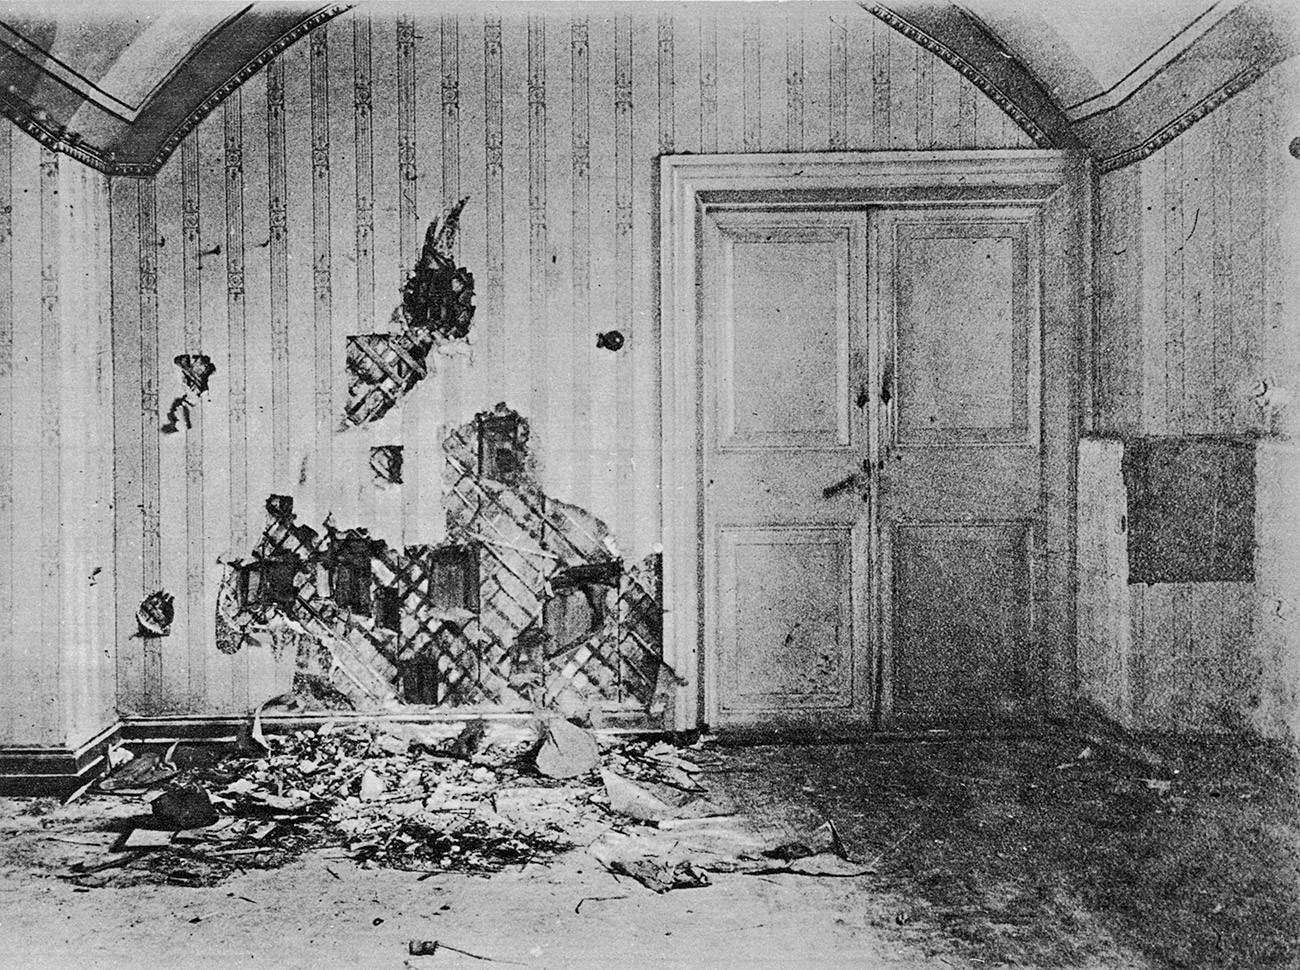 Podrumska prostorija u kući Ipatjeva u kojoj su strijeljani članovi carske obitelji i njihove sluge, 1918.

